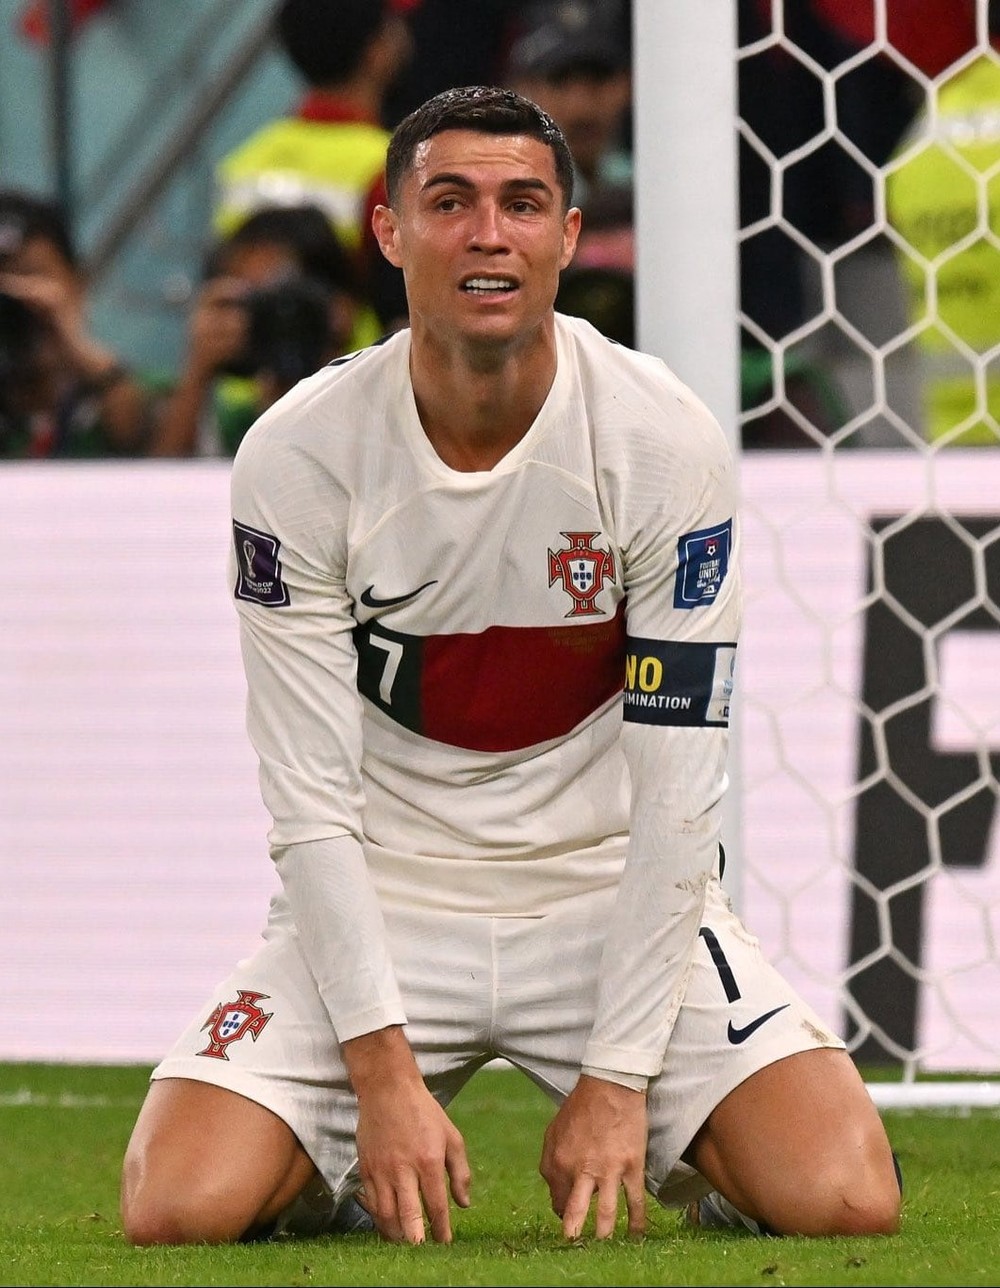 Ronaldo khóc bị loại khỏi World Cup: Hãy để người hâm mộ được chứng kiến khoảnh khắc cảm động của Cristiano Ronaldo khi anh phải rời khỏi World Cup sớm hơn dự kiến. Nhìn thấy anh khóc nhưng không bao giờ từ bỏ sự đam mê khi chơi bóng. Nếu bạn yêu bóng đá, đừng bỏ lỡ hình ảnh của người hùng này.